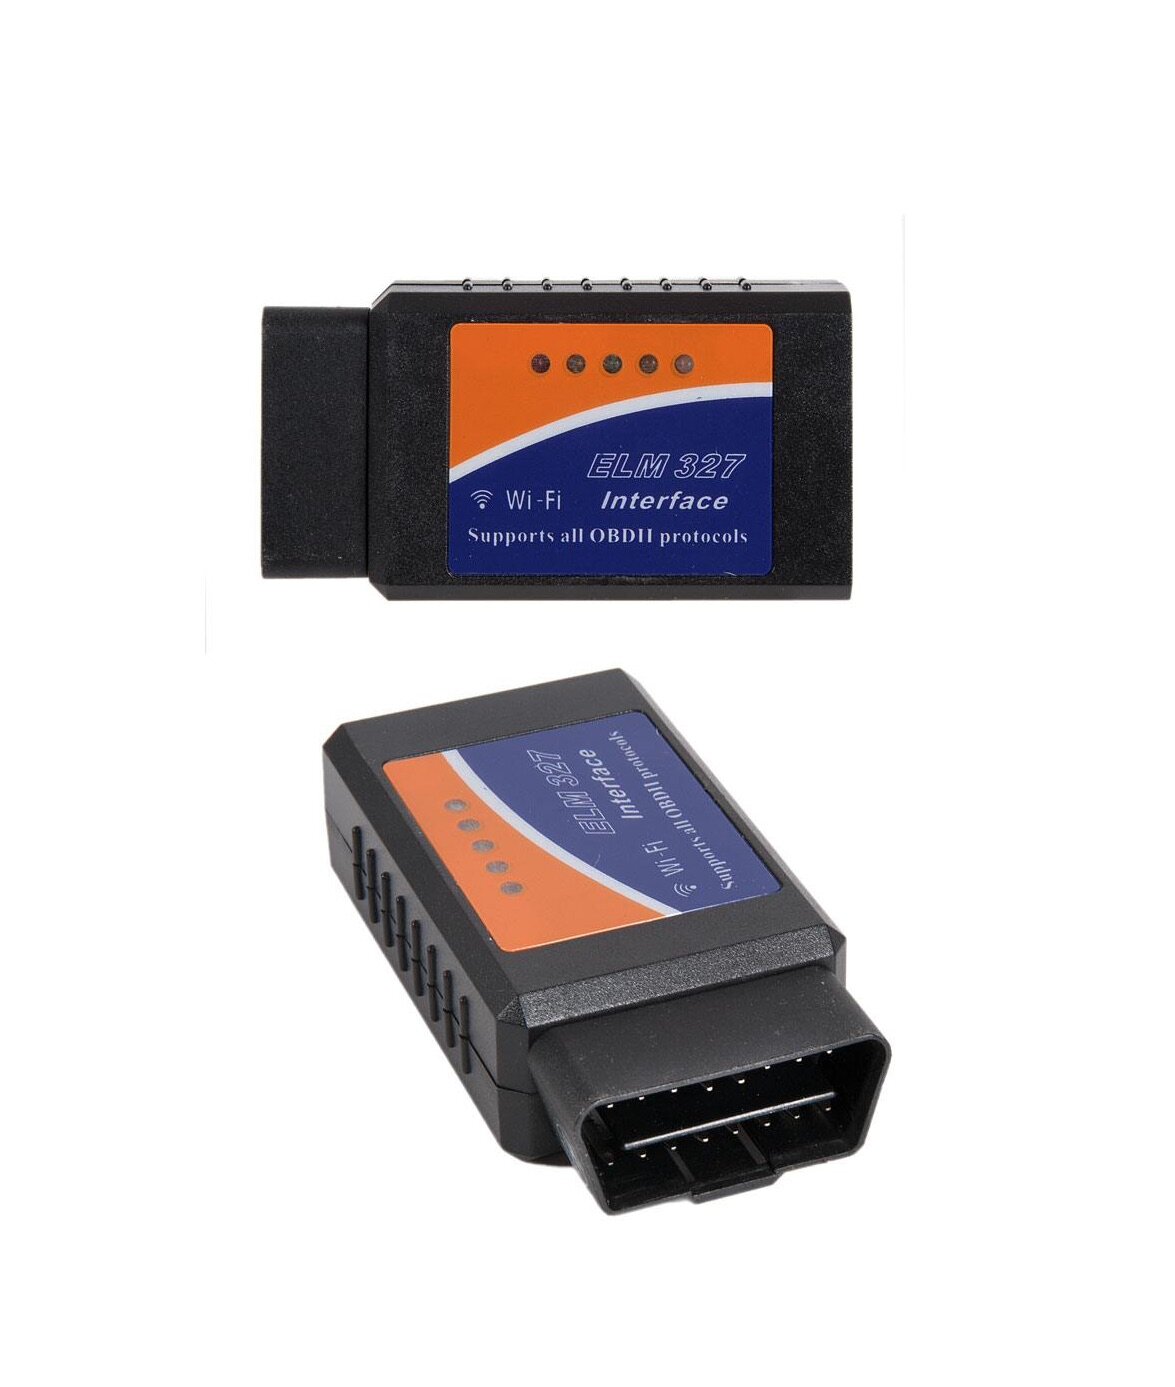 Автосканер ELM327 obd2 для диагностики автомобиля ELM327 wi fi v.1.5, приставка к ноутбуку / телефону